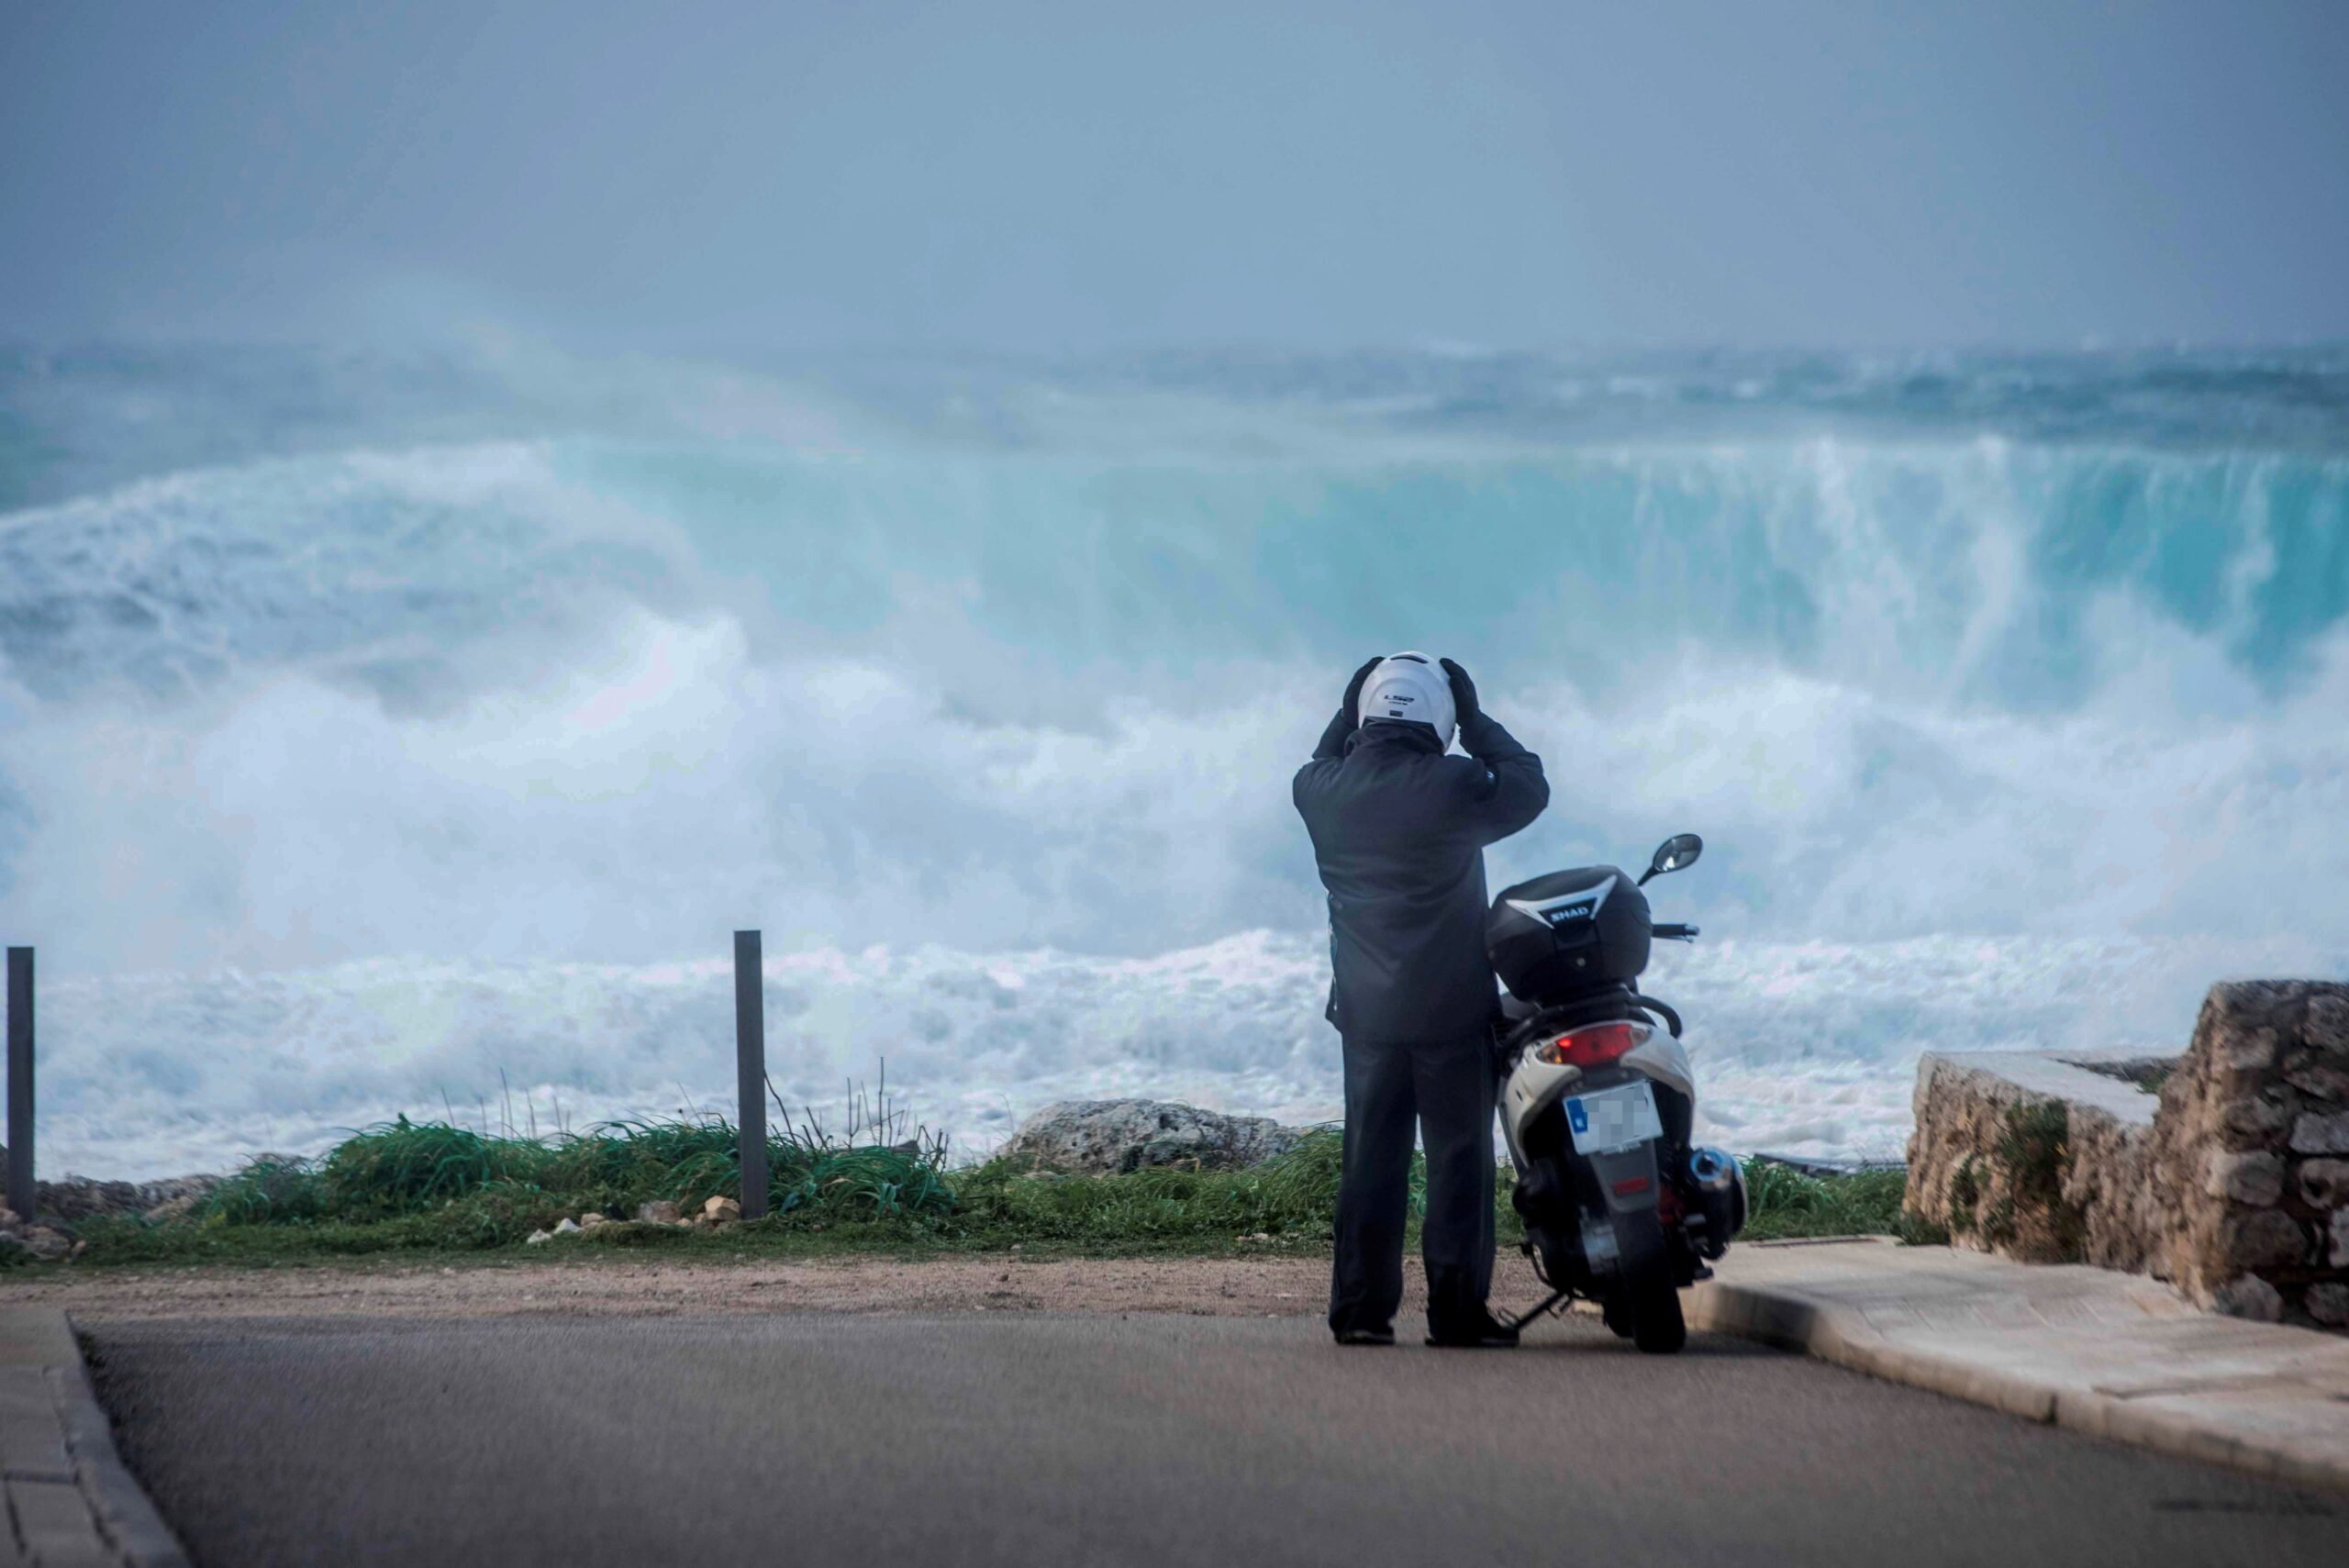 Un motorista es prepara per muntar en el seu scooter mentre grans onades trenquen a Biniancolla (Menorca). Fotografia: EFE/ David Arquimnau Sintes